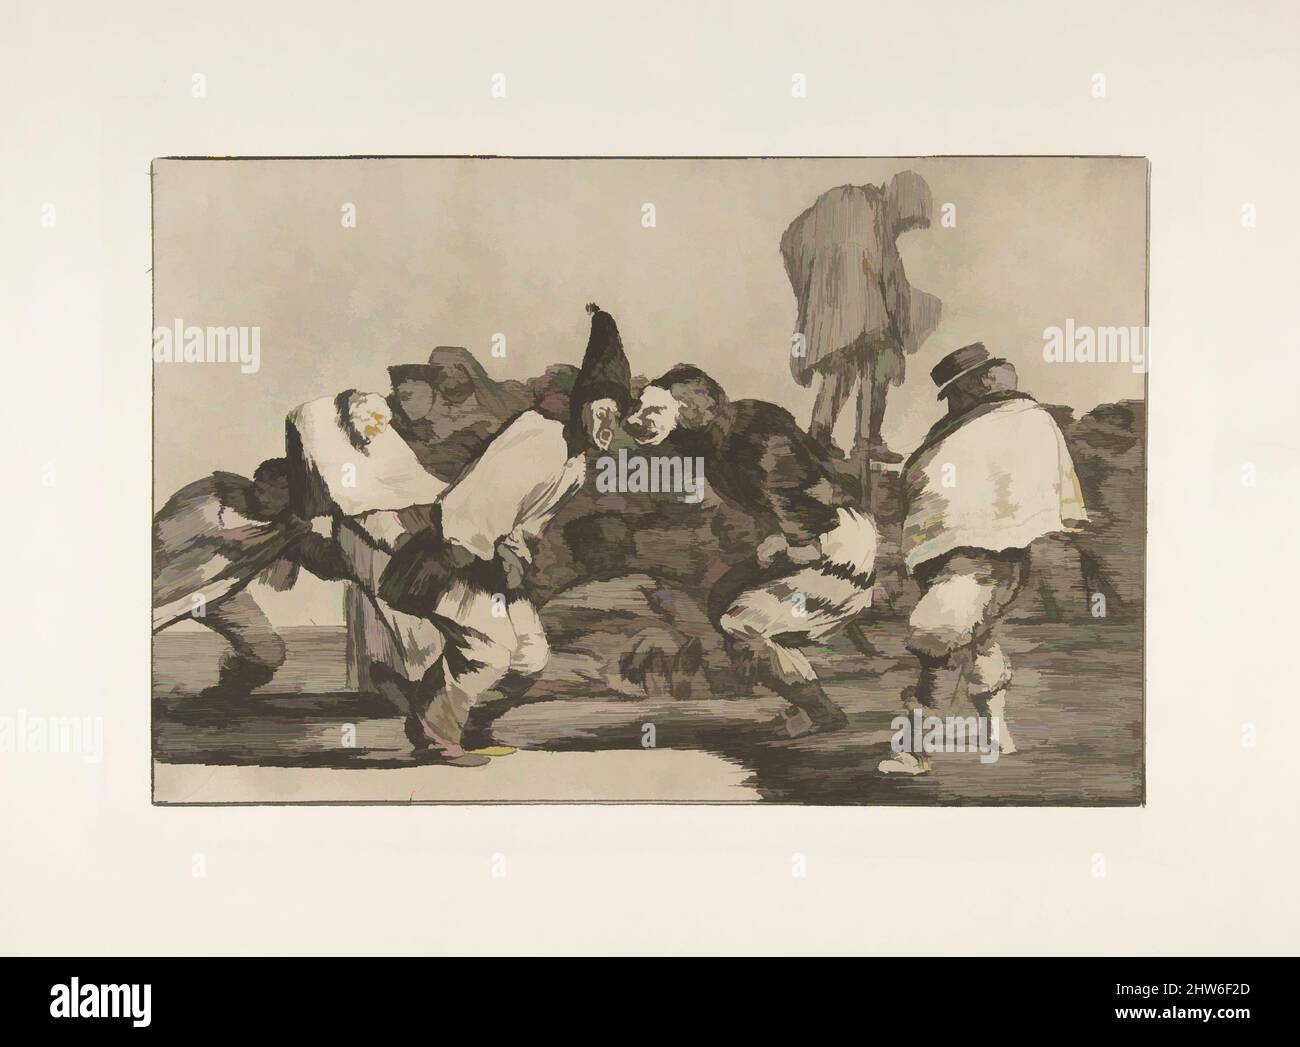 Art inspiré par la planche 14 des 'Disparates' : Carnival Folly, CA. 1816–23 (publié en 1864), Etching et aquatint, plaque : 9 5/8 × 13 3/4 po. (24,5 × 35 cm), gravures, Goya (Francisco de Goya y Lucientes) (espagnol, Fuendetodos 1746–1828 Bordeaux), cette gravure a été interprétée comme une œuvre classique modernisée par Artotop avec un peu de modernité. Formes, couleur et valeur, impact visuel accrocheur sur l'art émotions par la liberté d'œuvres d'art d'une manière contemporaine. Un message intemporel qui cherche une nouvelle direction créative. Artistes qui se tournent vers le support numérique et créent le NFT Artotop Banque D'Images